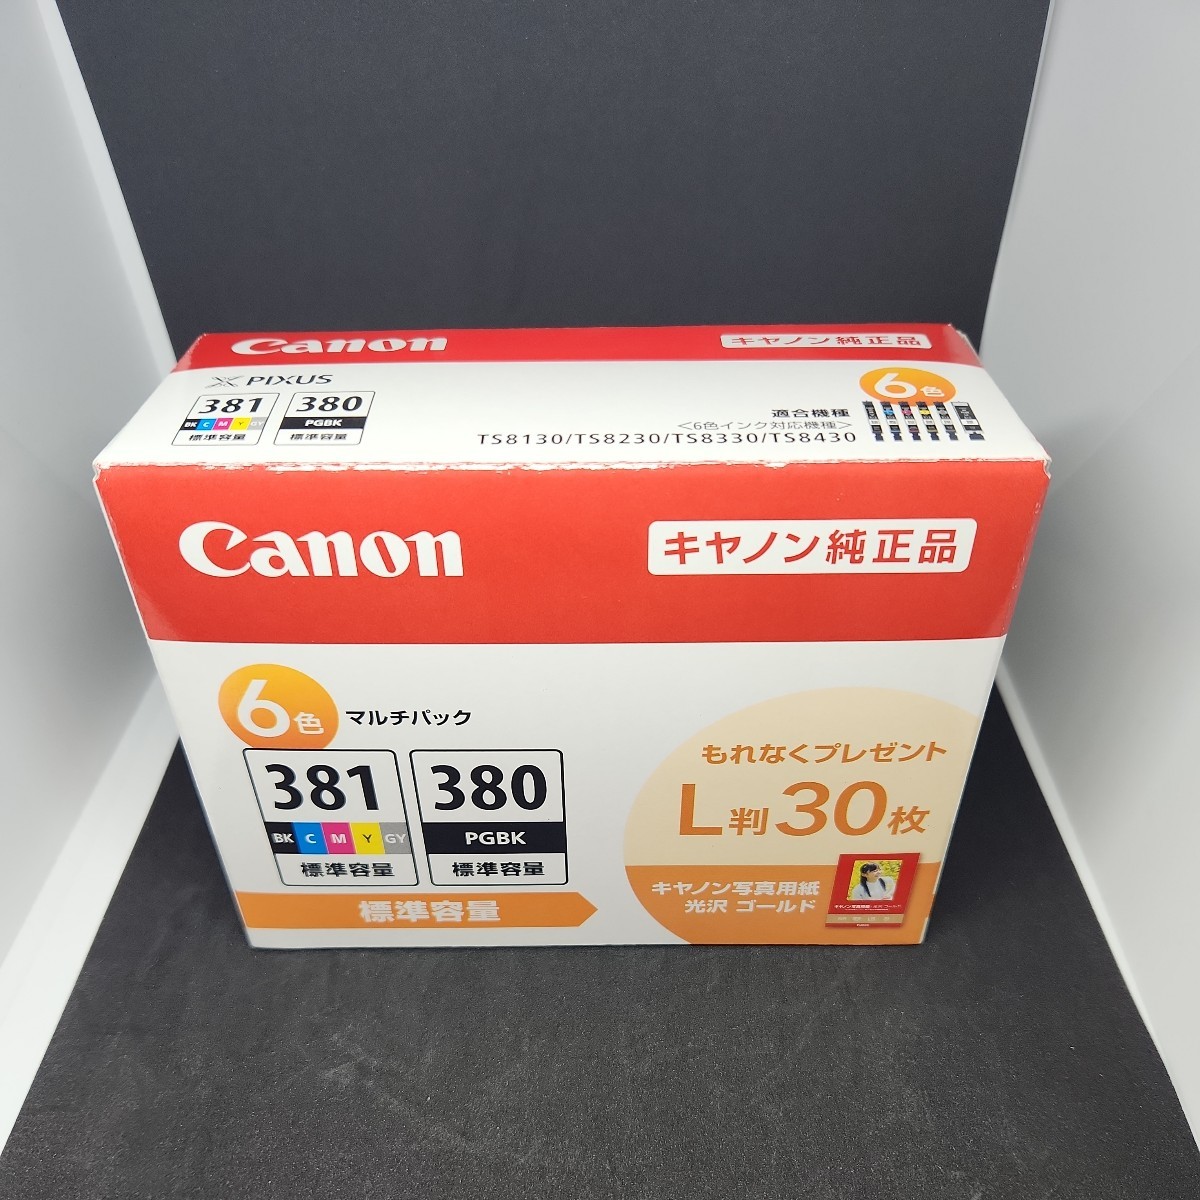 Canon 純正 インクカートリッジ BCI-381(BK/C/M/Y/GY)+380 6色マルチパック BCI-381+380/6MP_画像1